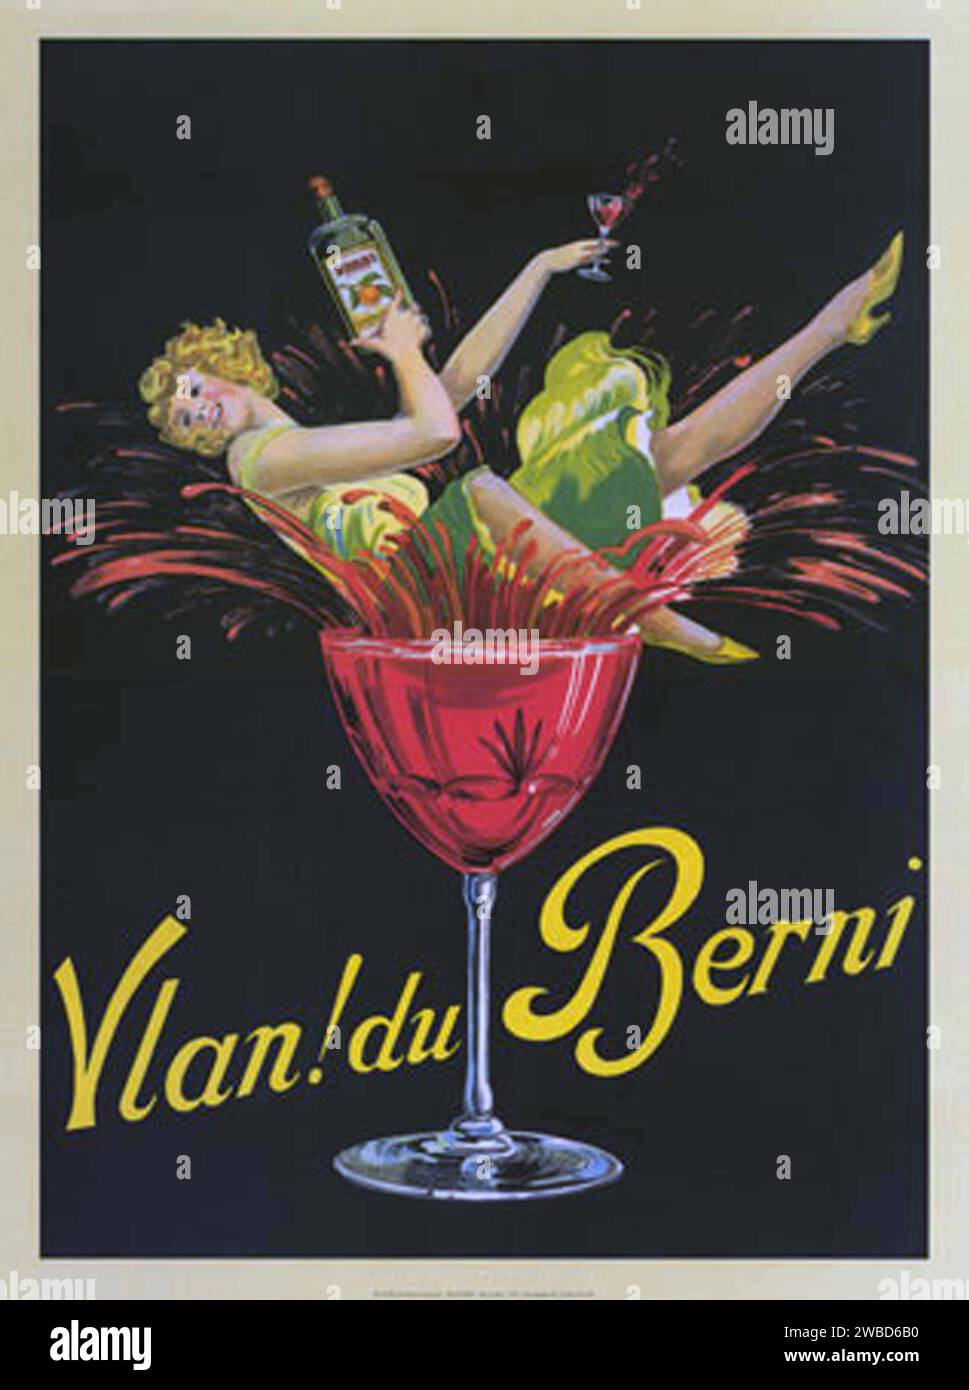 Affiches publicitaires vintage, ménage, nourriture et boisson Banque D'Images